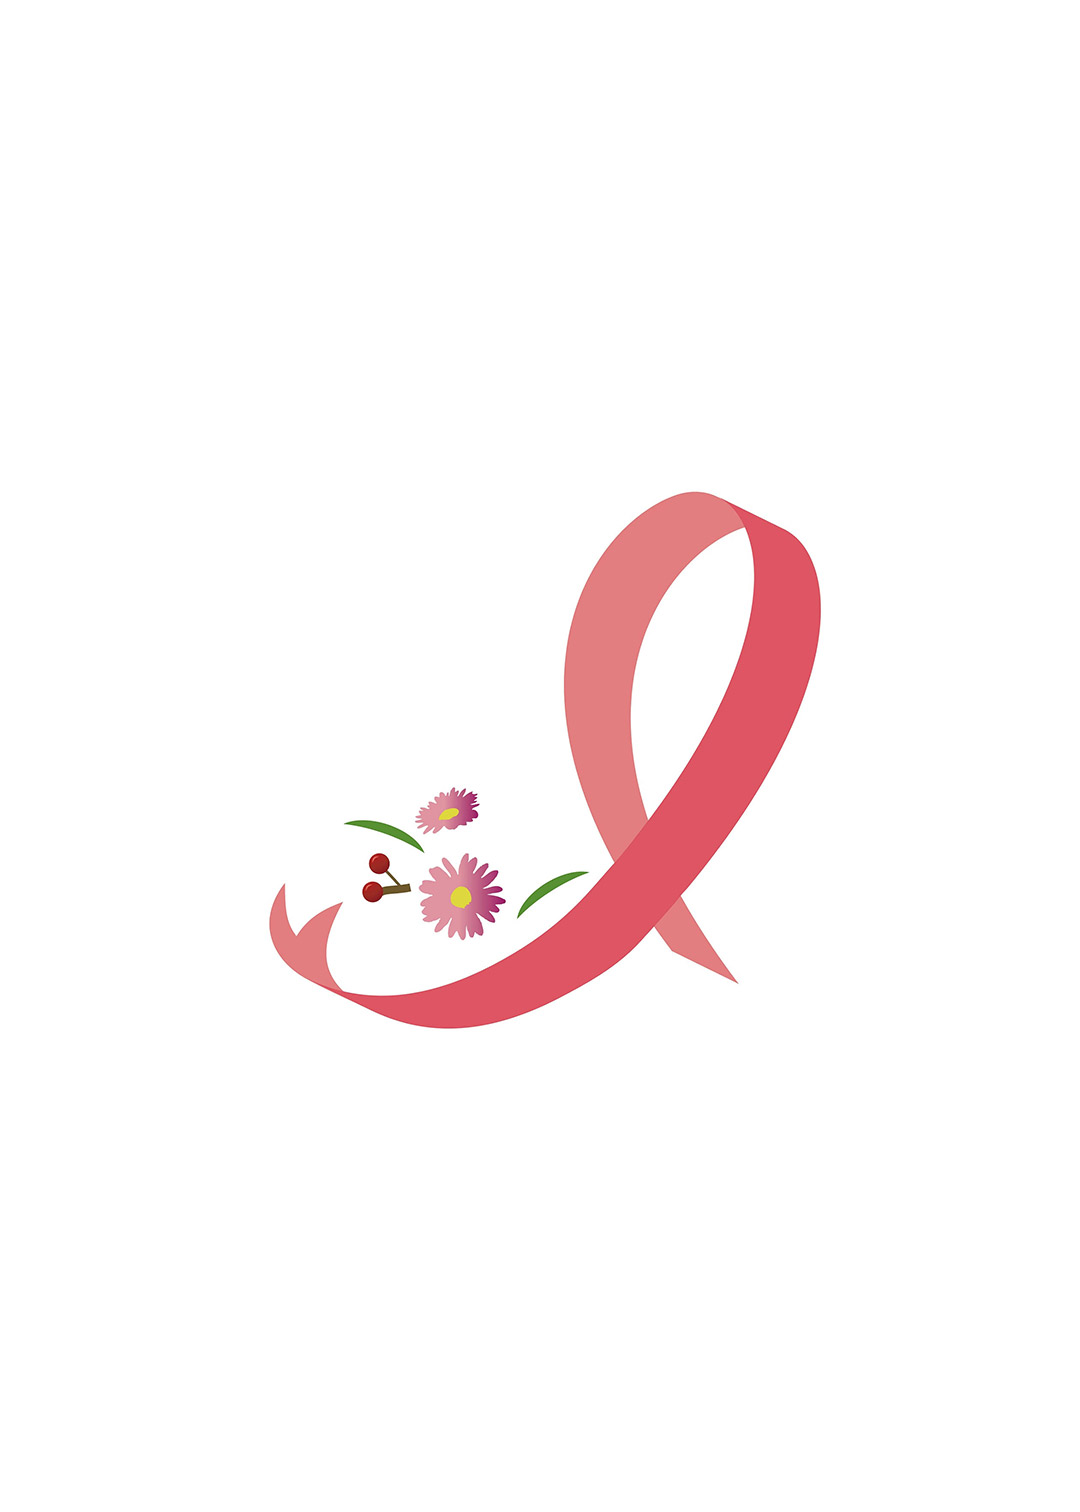 乳がん予防医学推進協会